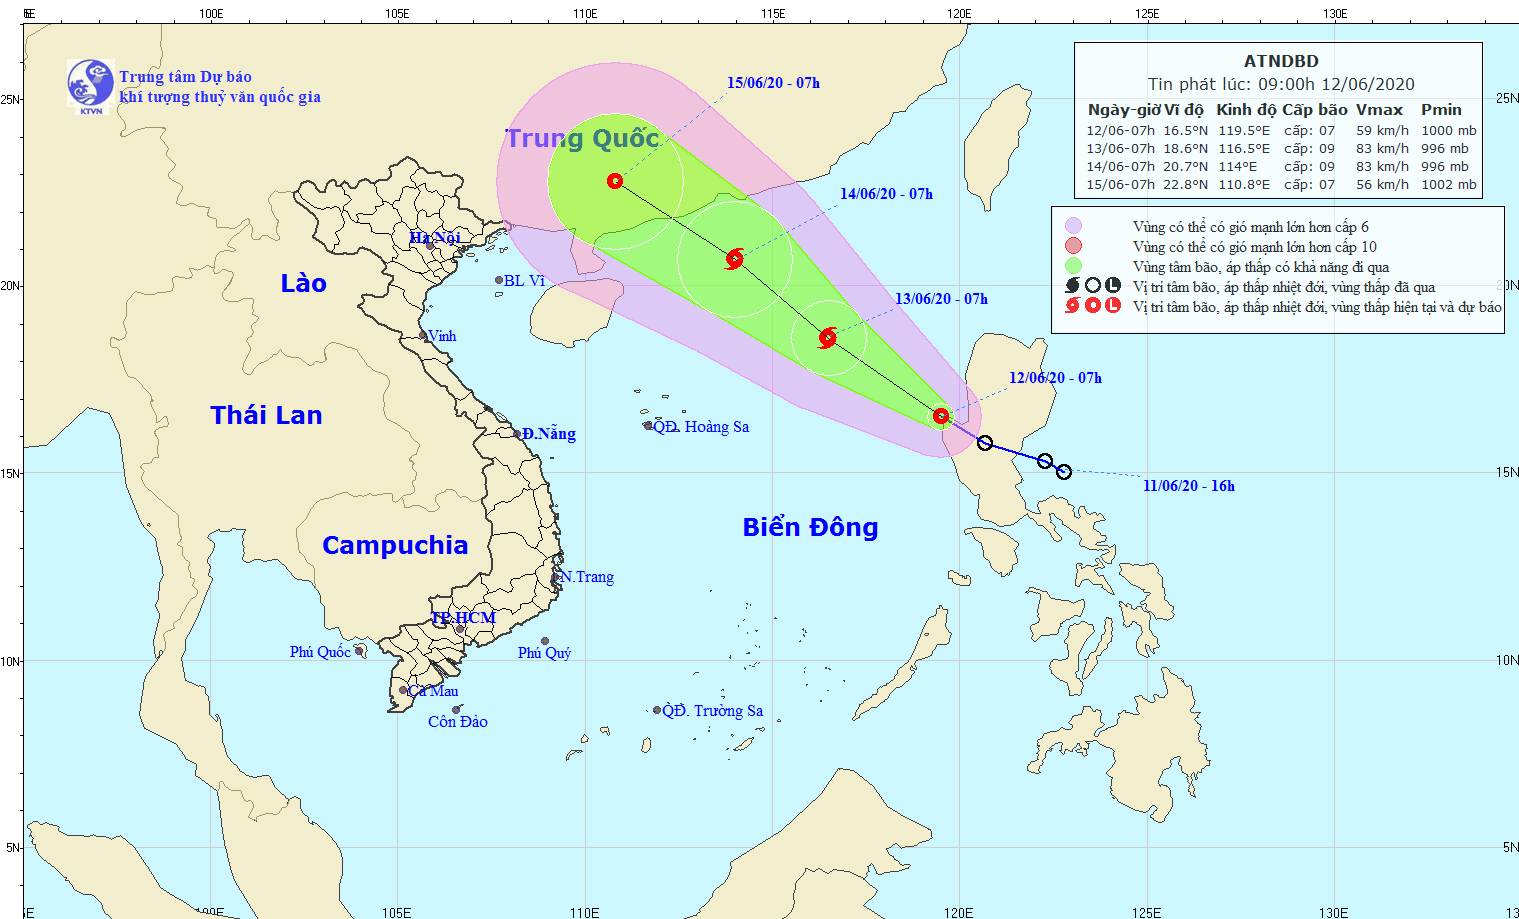 Theo dõi chặt chẽ diễn biến của áp thấp nhiệt đới gần Biển Đông